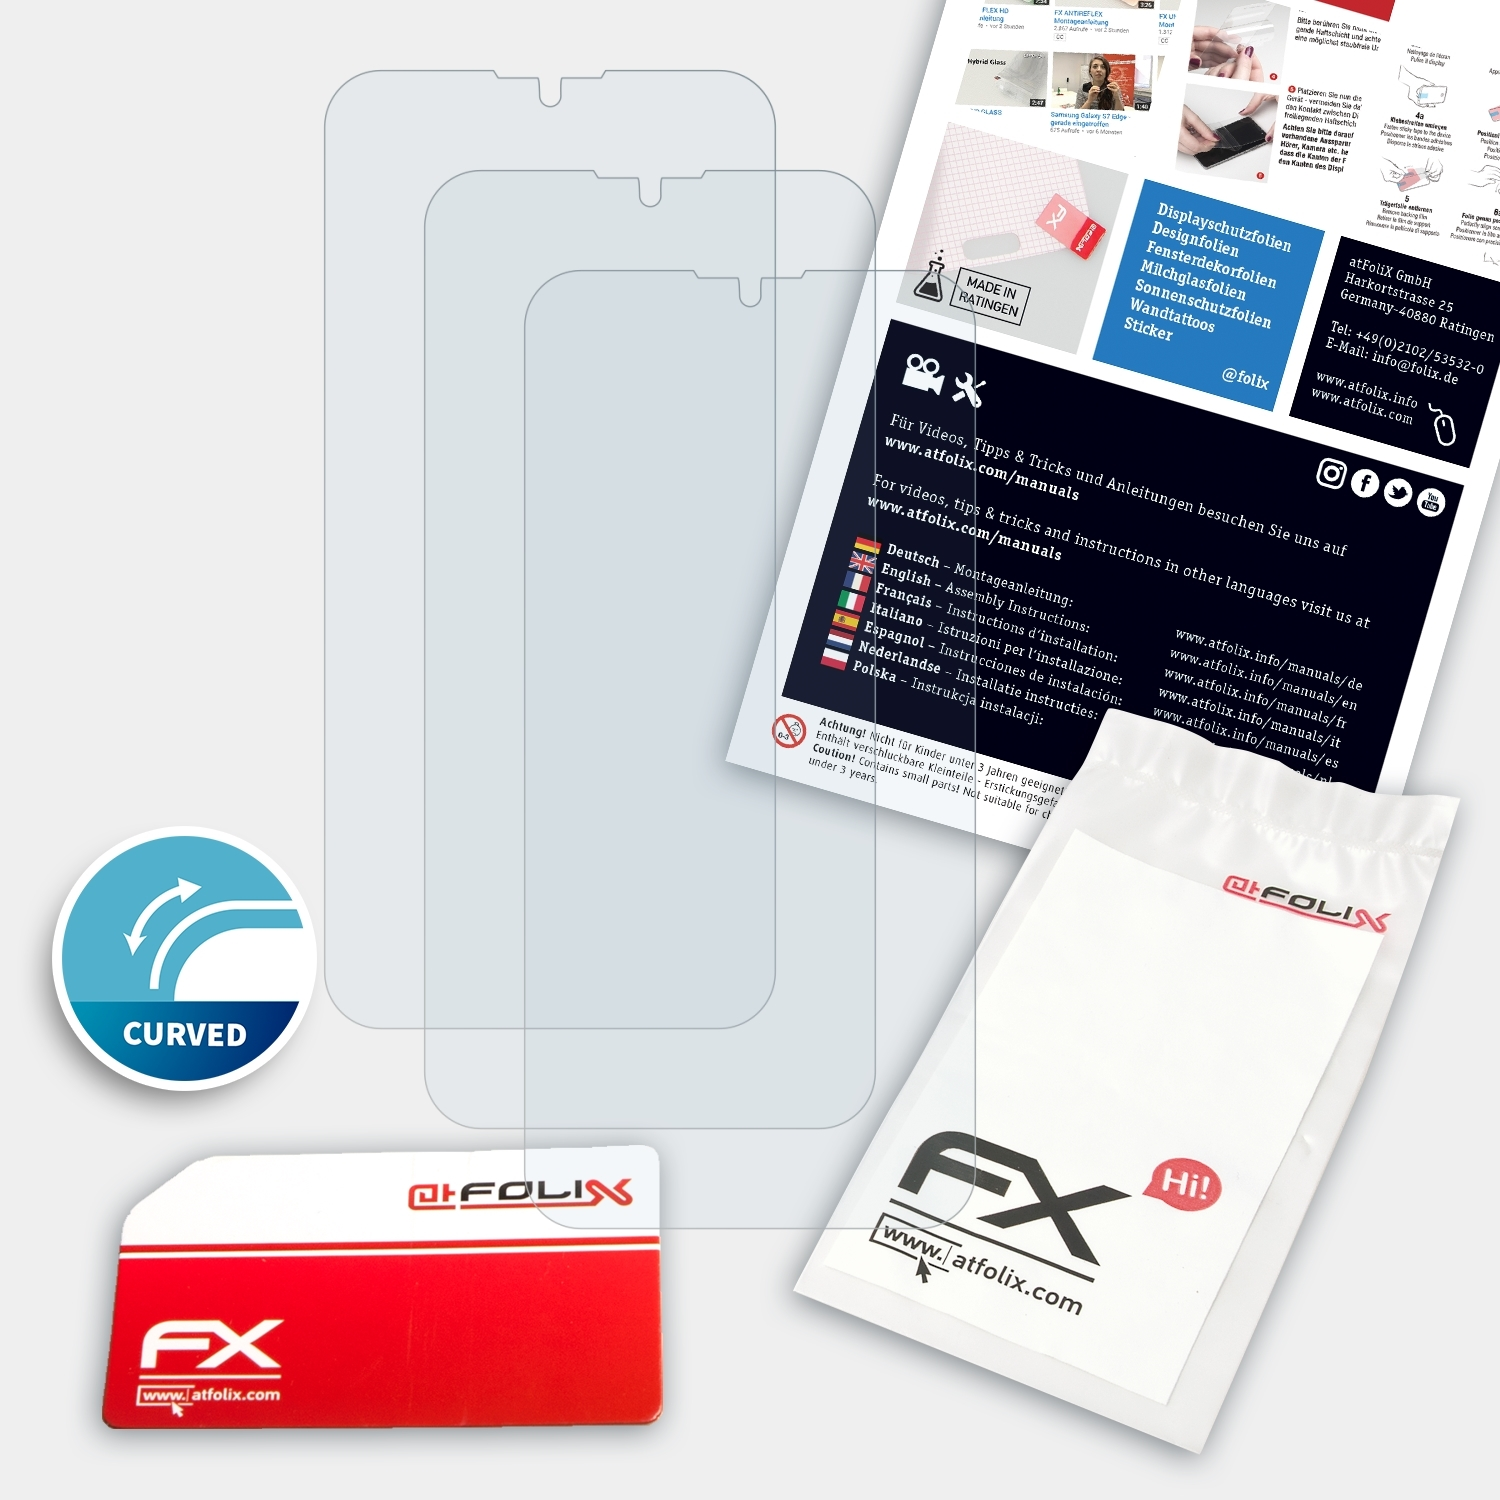 ATFOLIX 3x FX-ActiFleX Displayschutz(für 8) Xiaomi Redmi